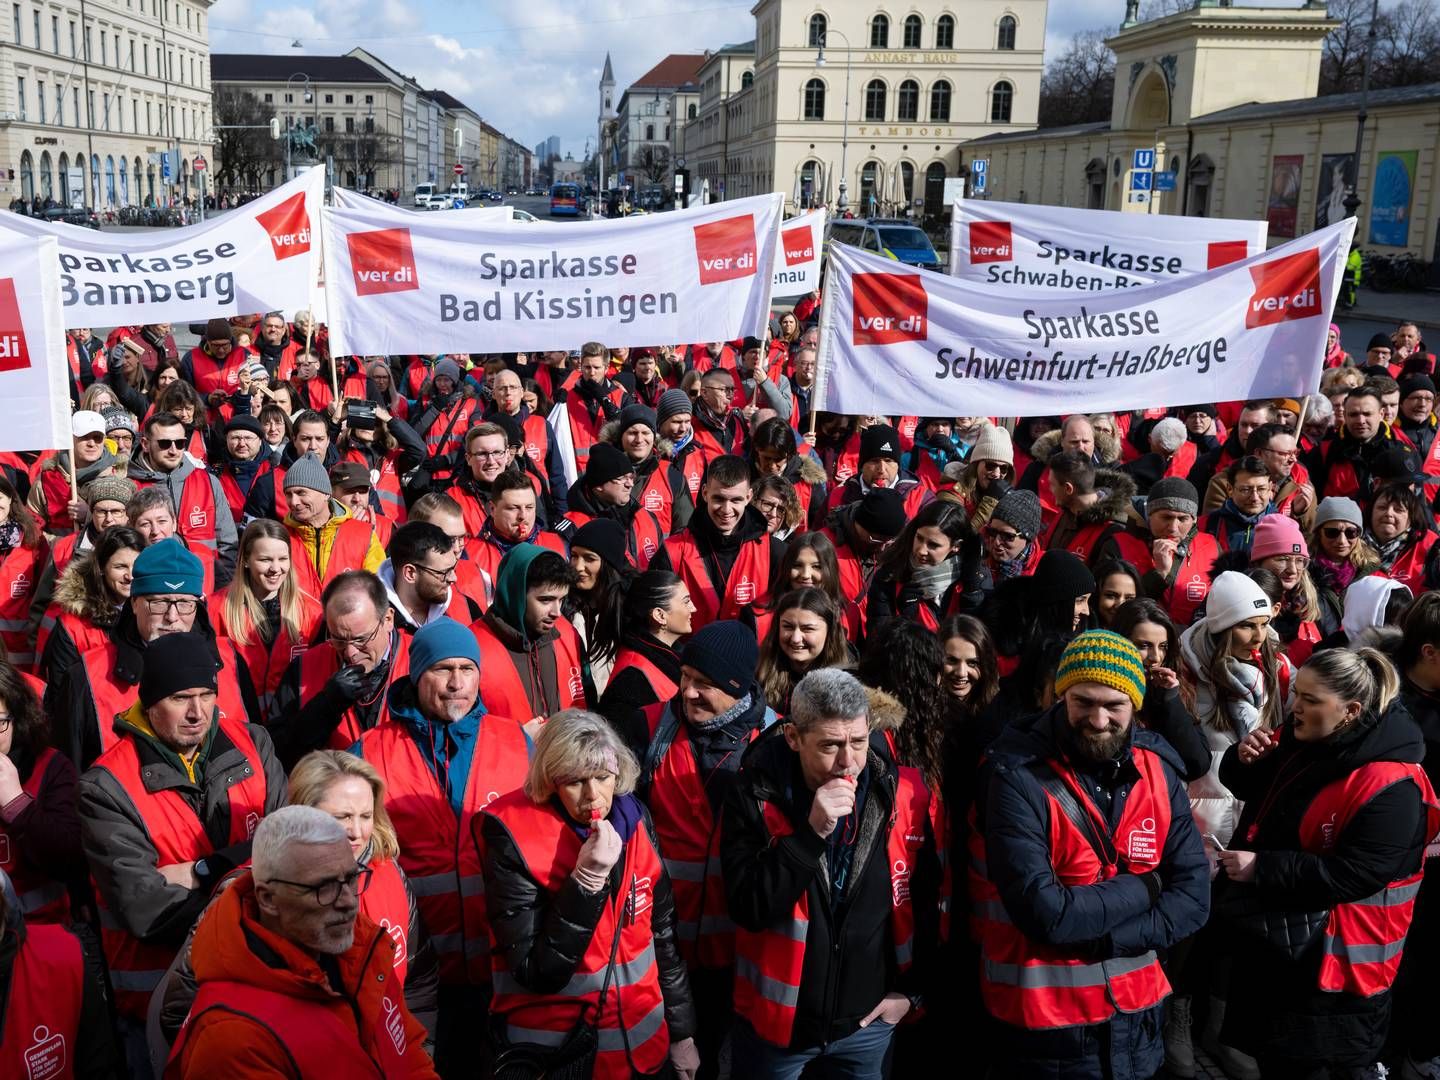 Streikende Sparkassen-Mitarbeiter in München | Photo: picture alliance/dpa | Sven Hoppe